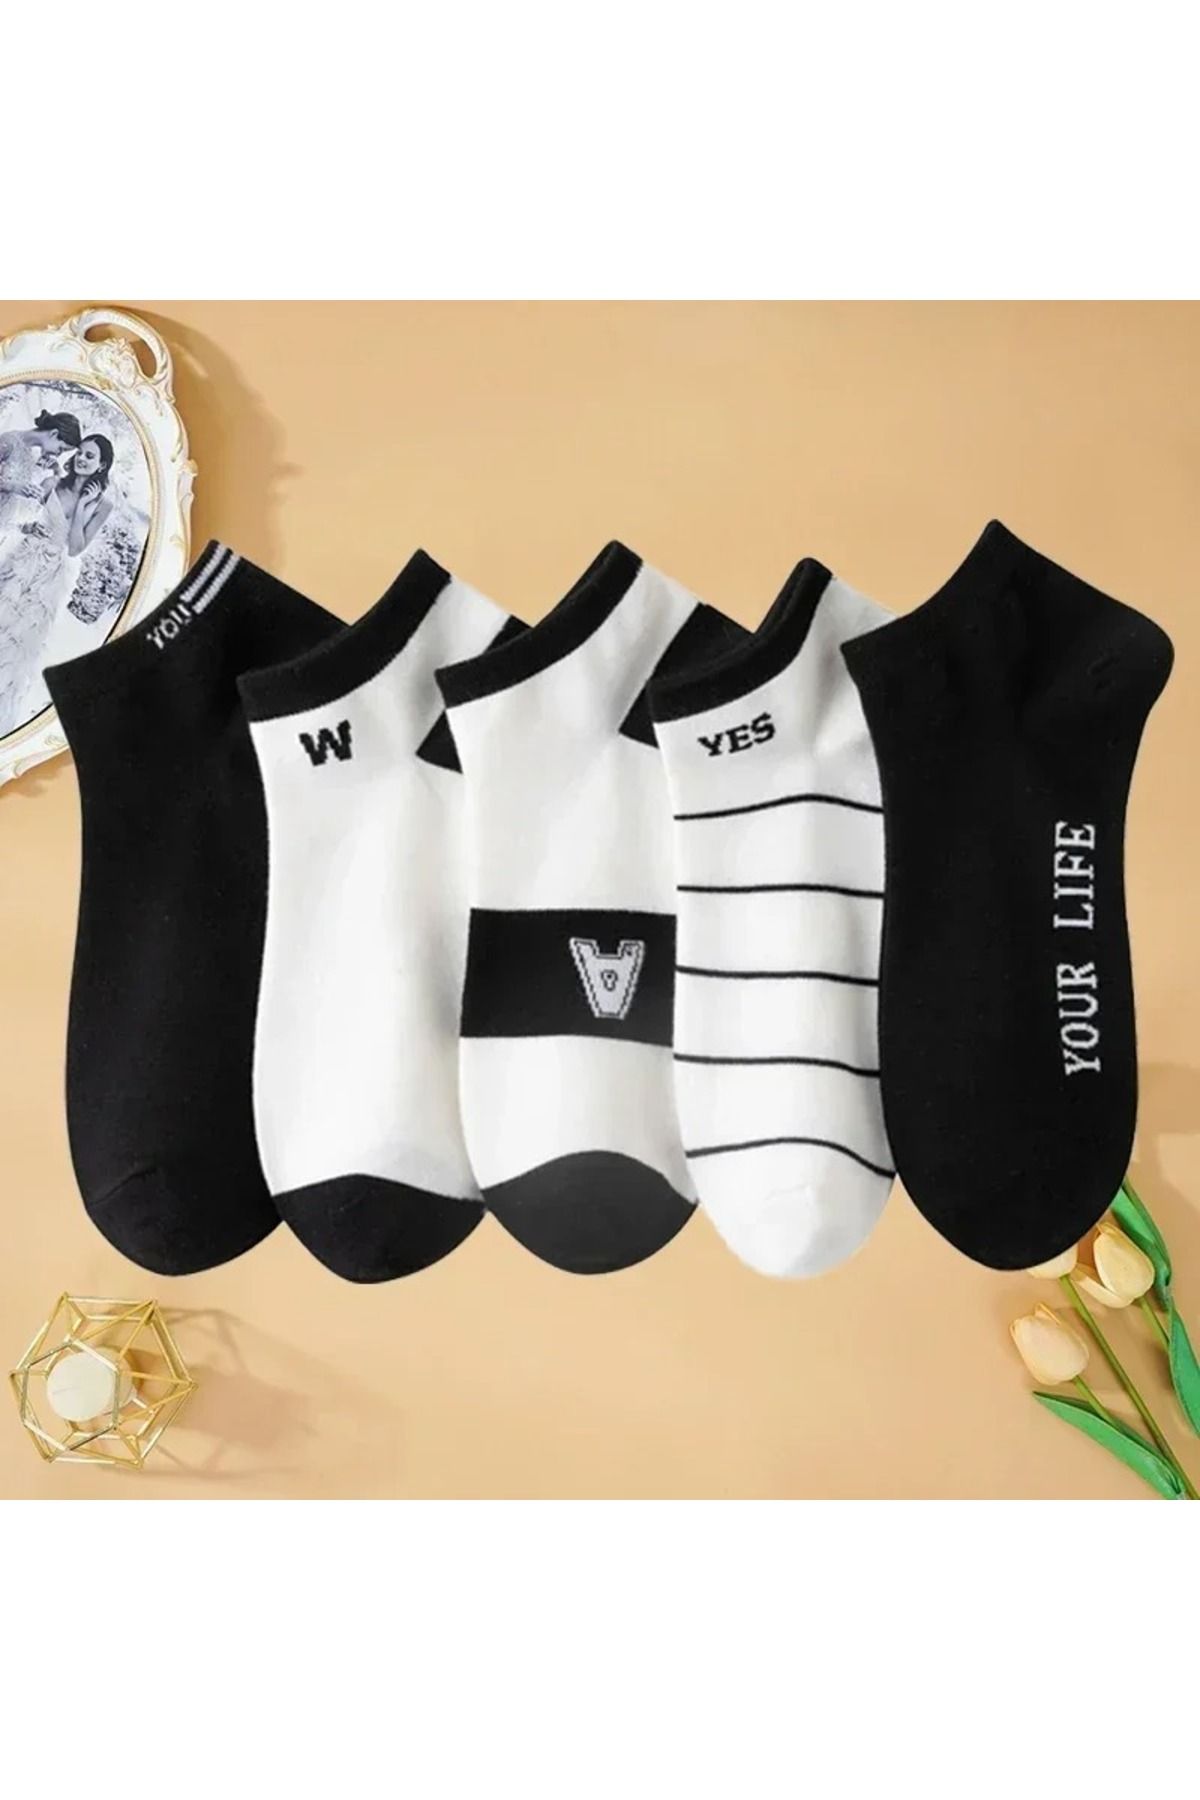 çorapmanya 5 Çift Dikişsiz Erkek Yazlık Rahat Siyah Beyaz Pamuk Patik Çorap